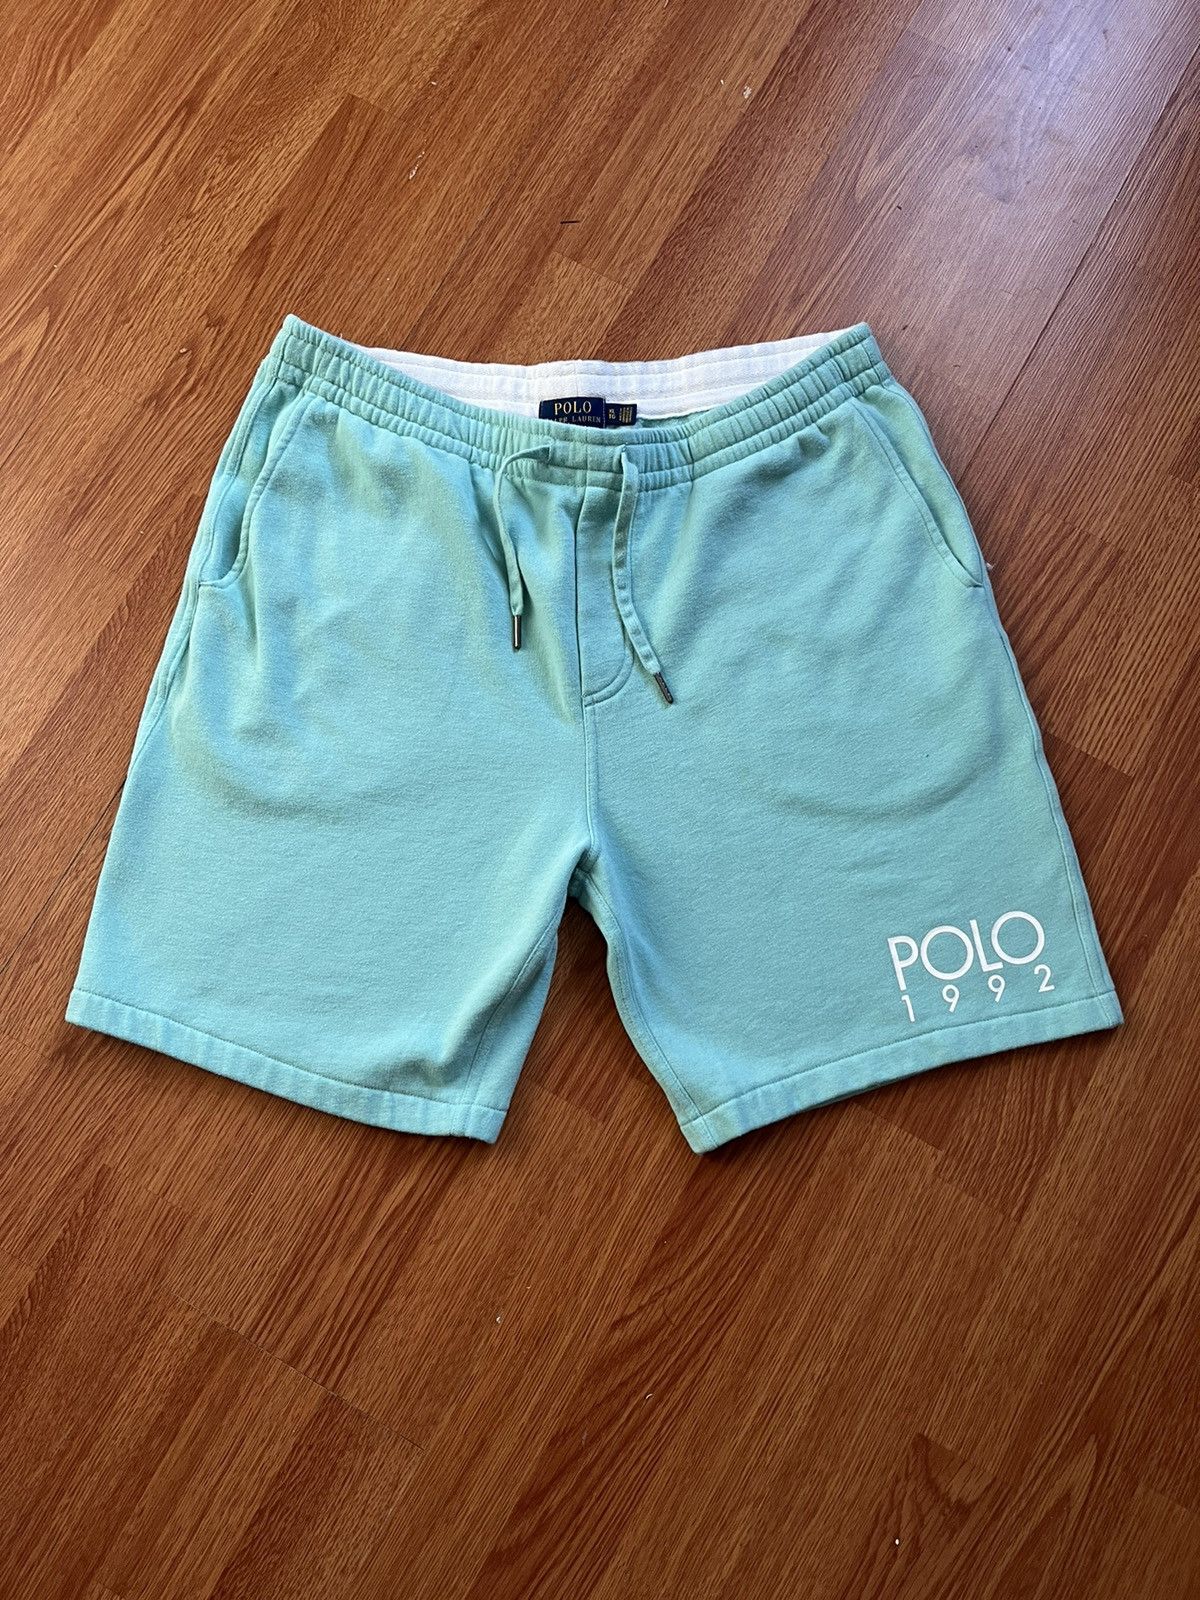 Polo Ralph Lauren Polo shorts Size US 36 / EU 52 - 1 Preview